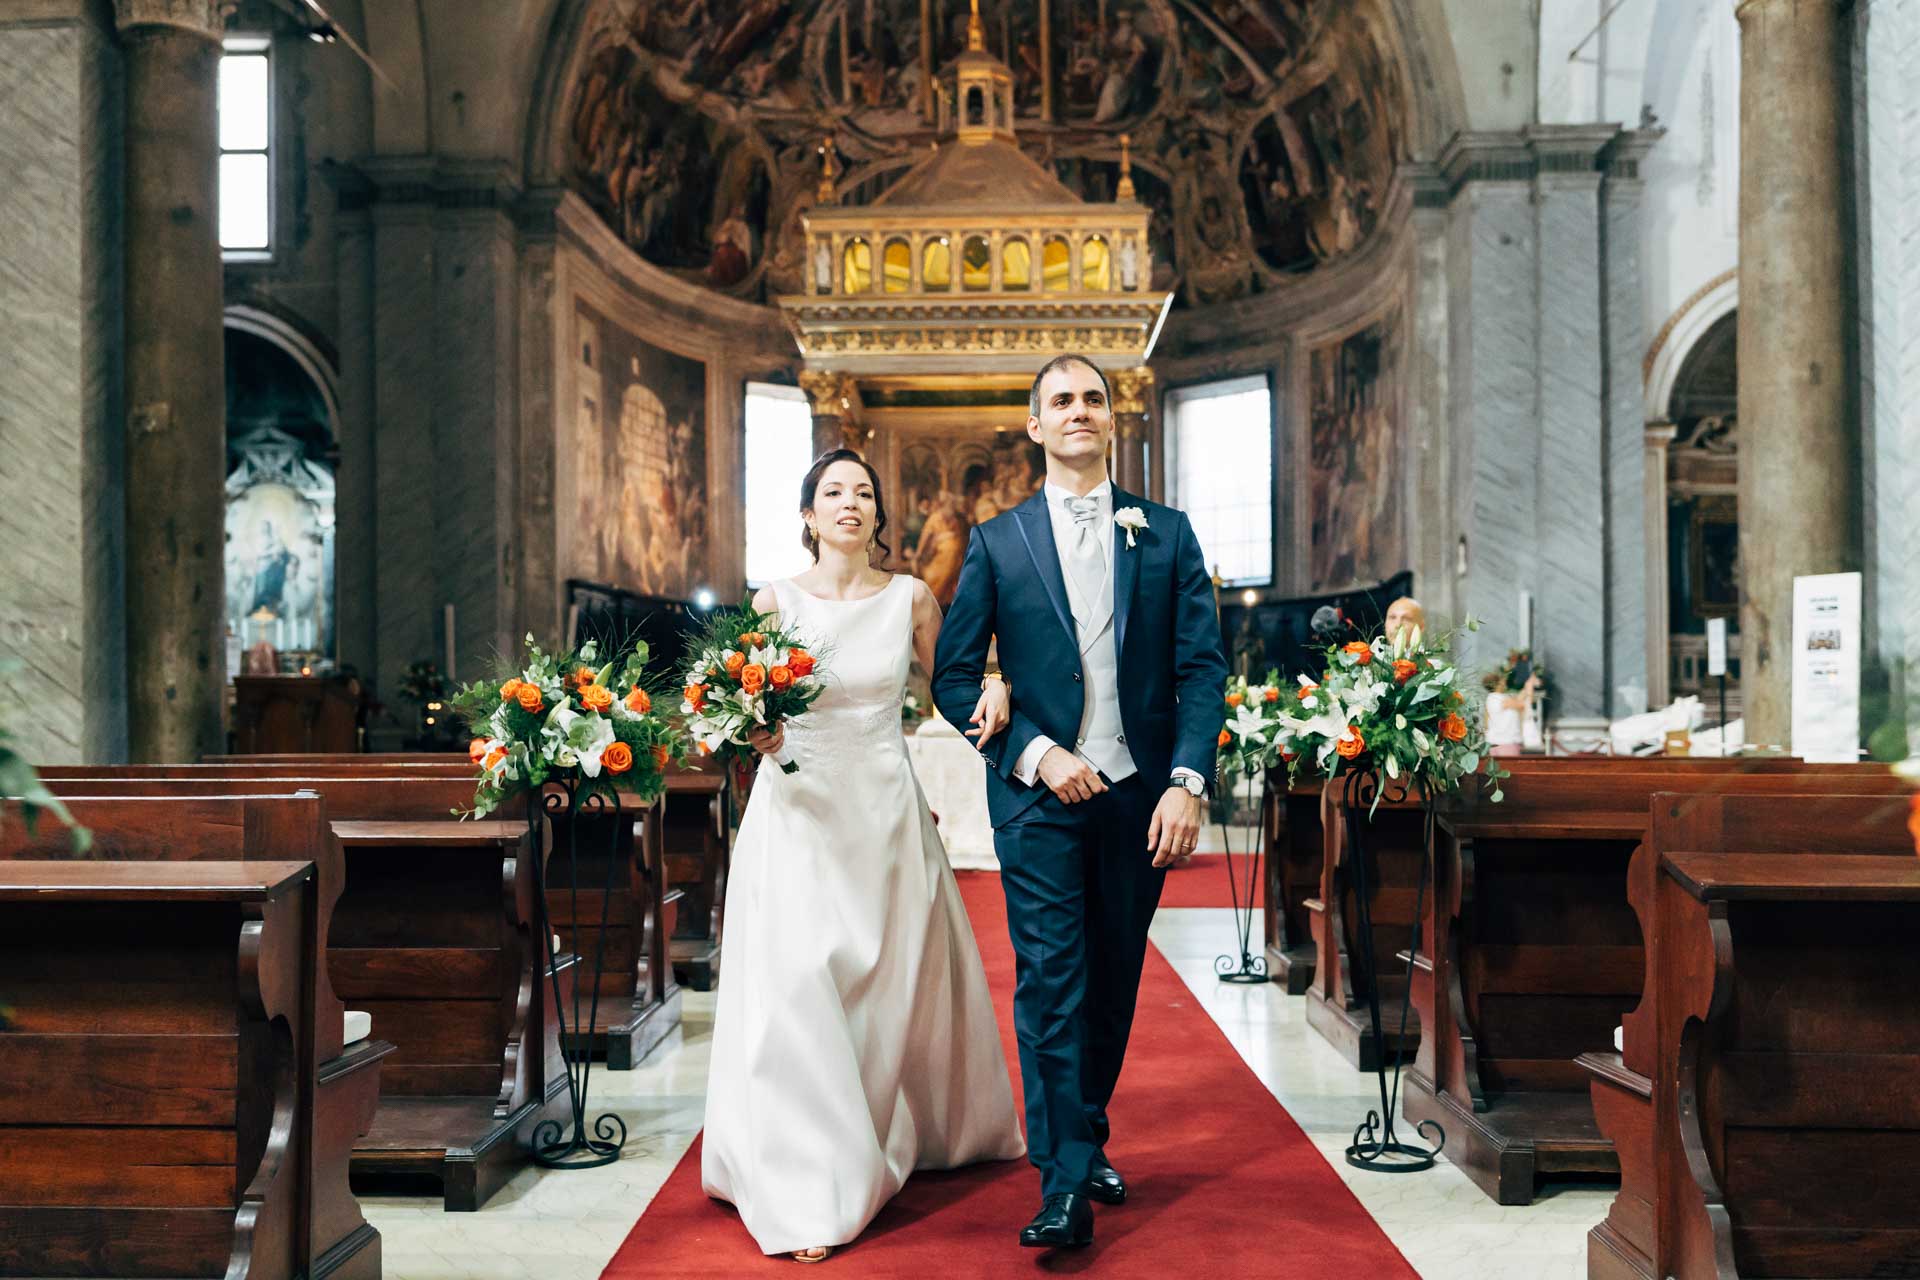 Uscita degli sposi durante il Matrimonio a Roma nella basilica di San Pietro in Vincoli